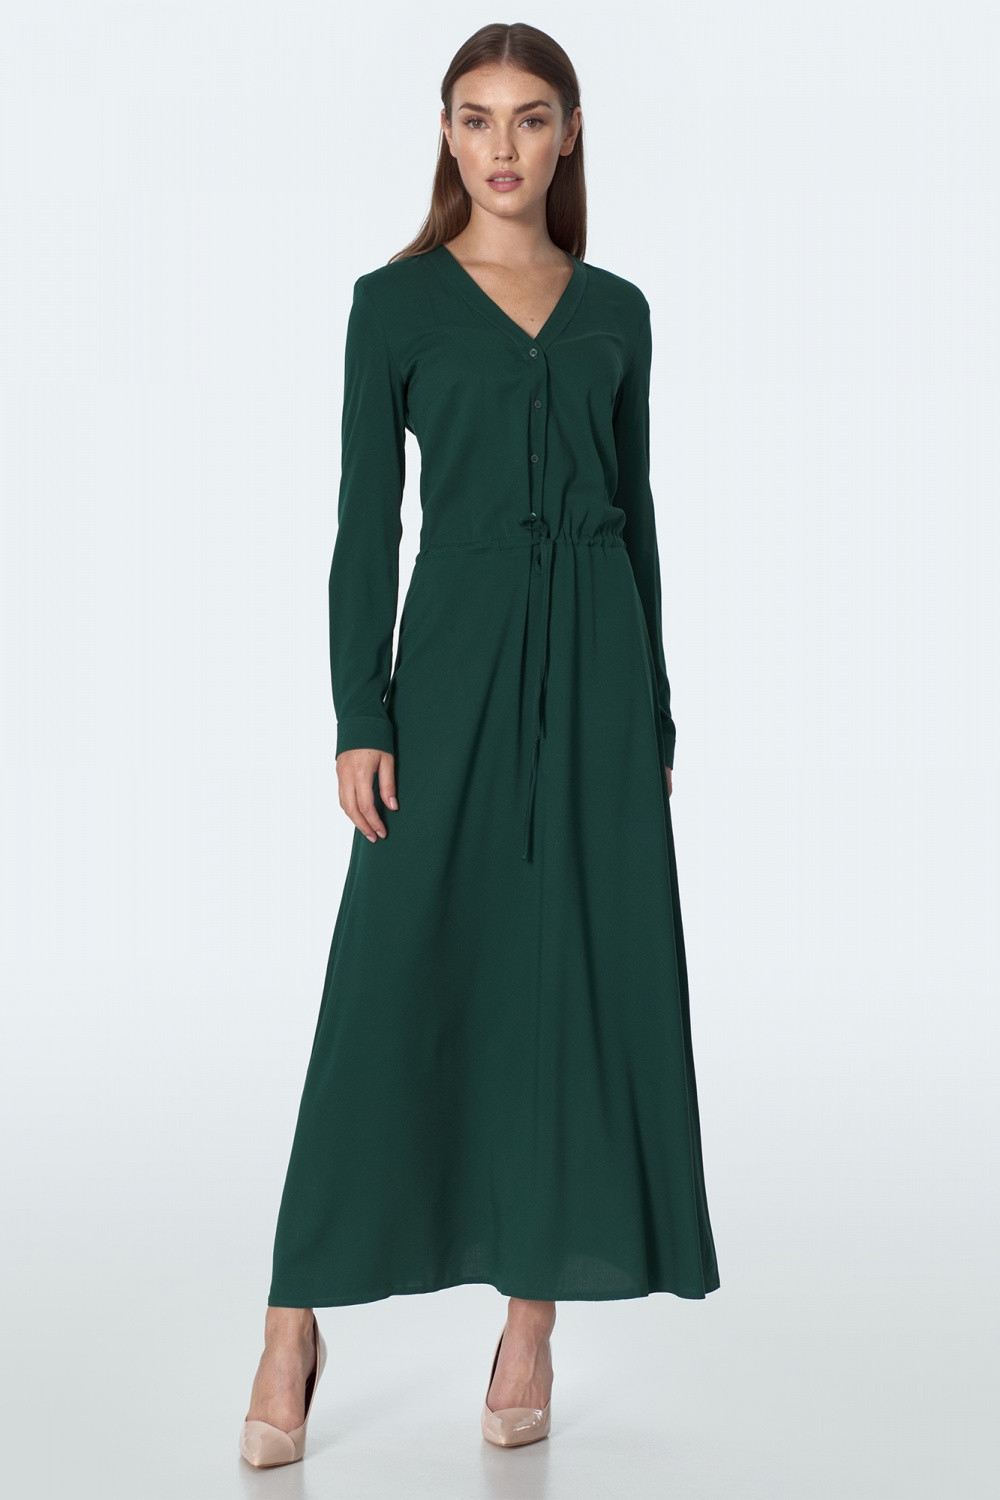 Dámské šaty S154R - Nife 42 tmavě zelená